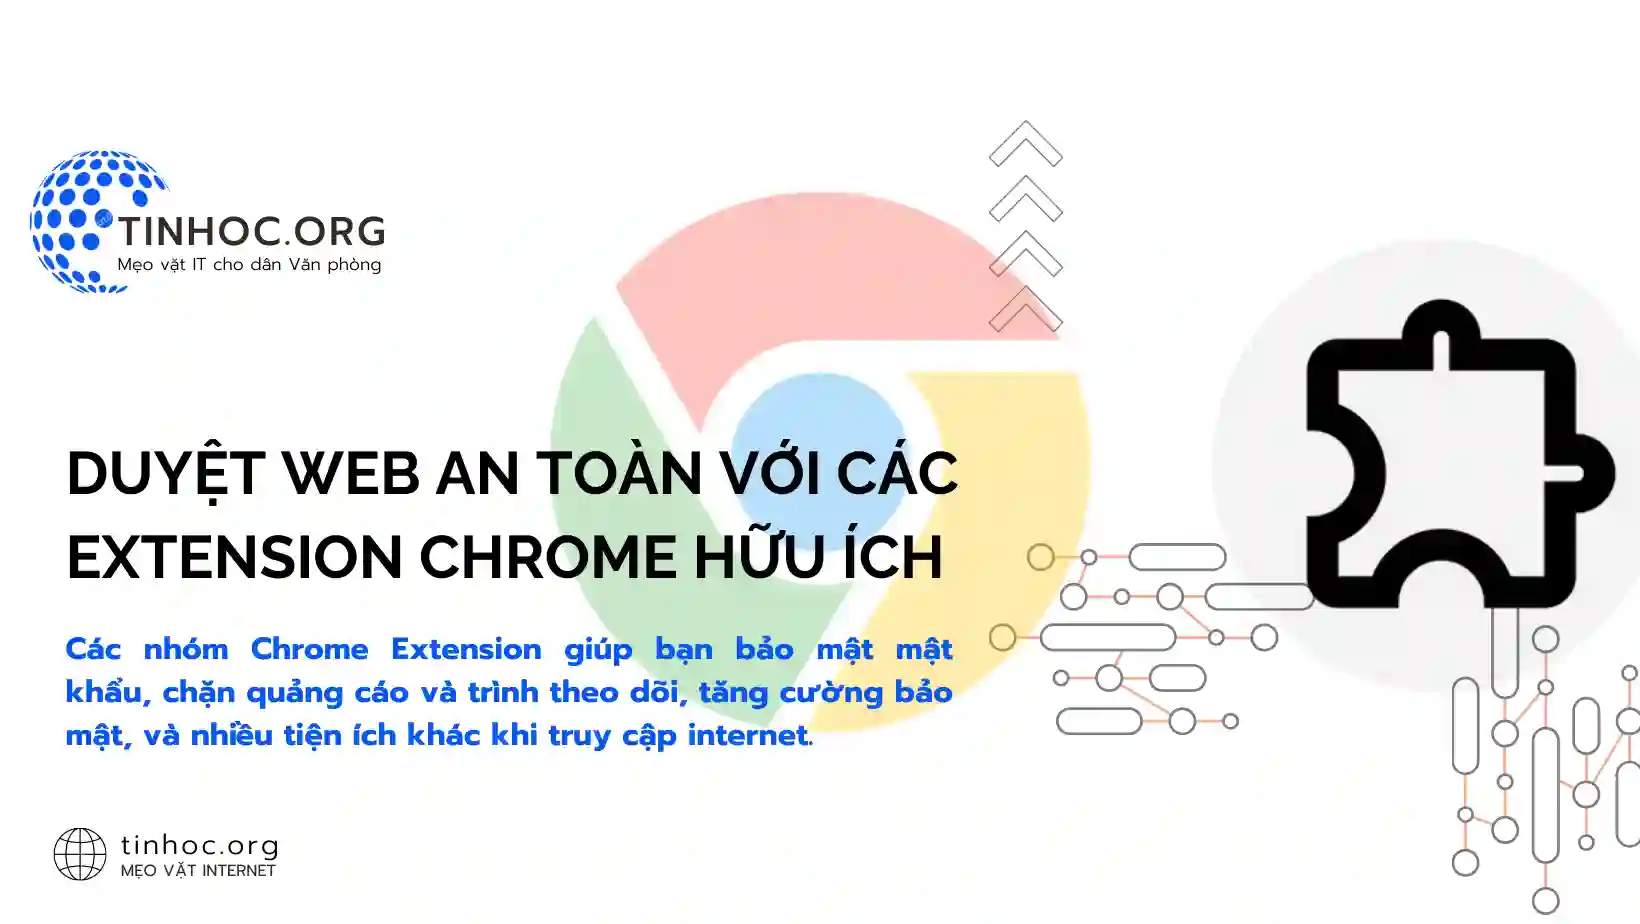 Duyệt web an toàn với các extension Chrome hữu ích